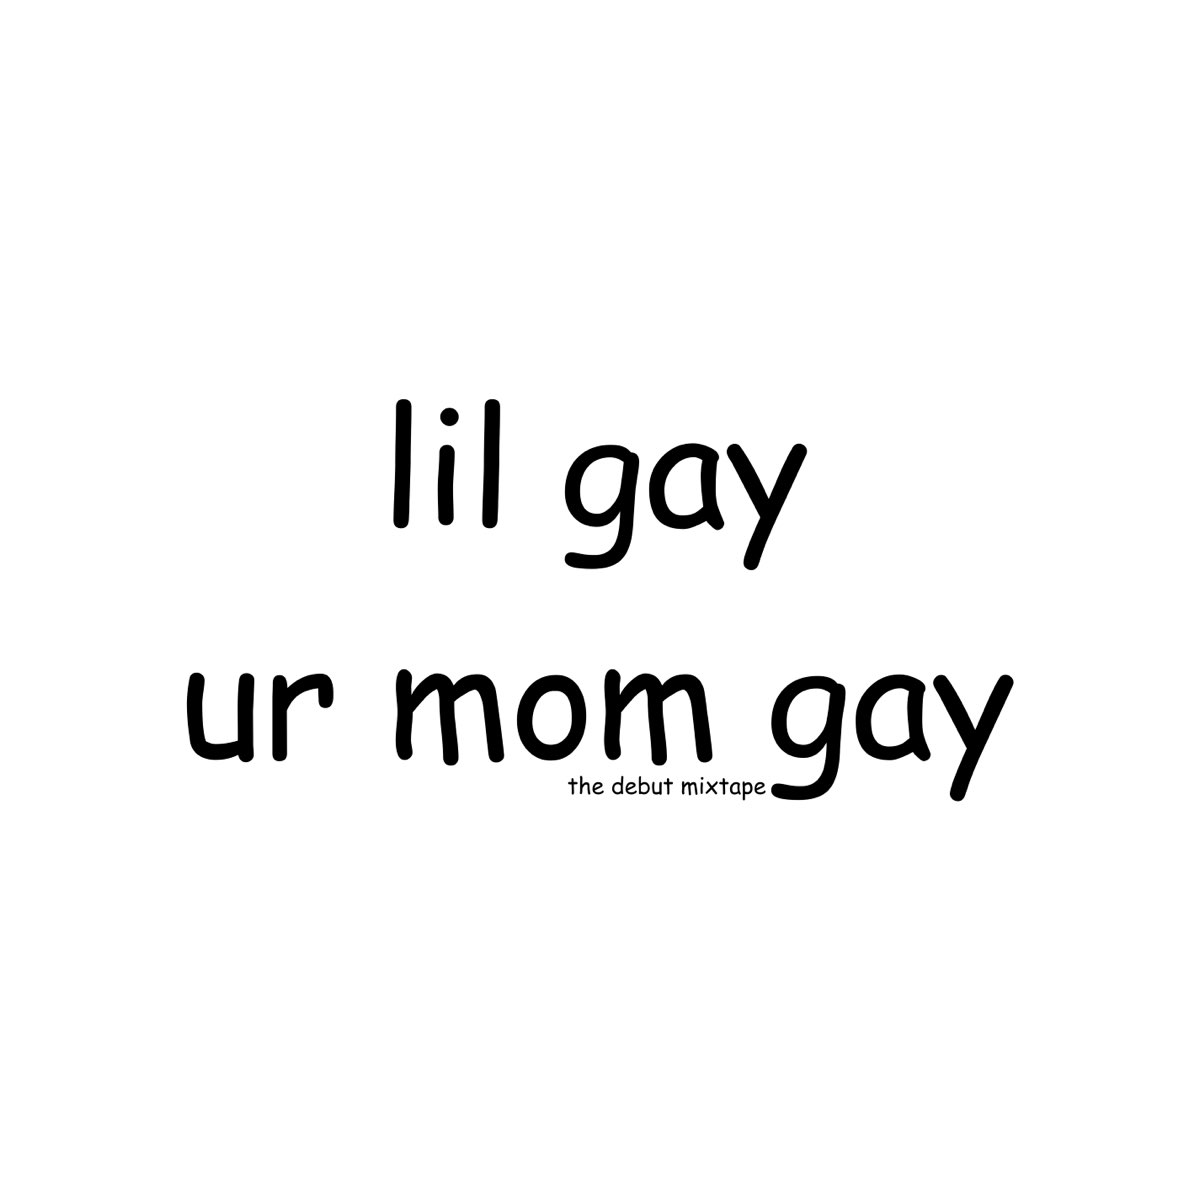 Ur Mom Gay - Album by Lil Gay - Apple Music